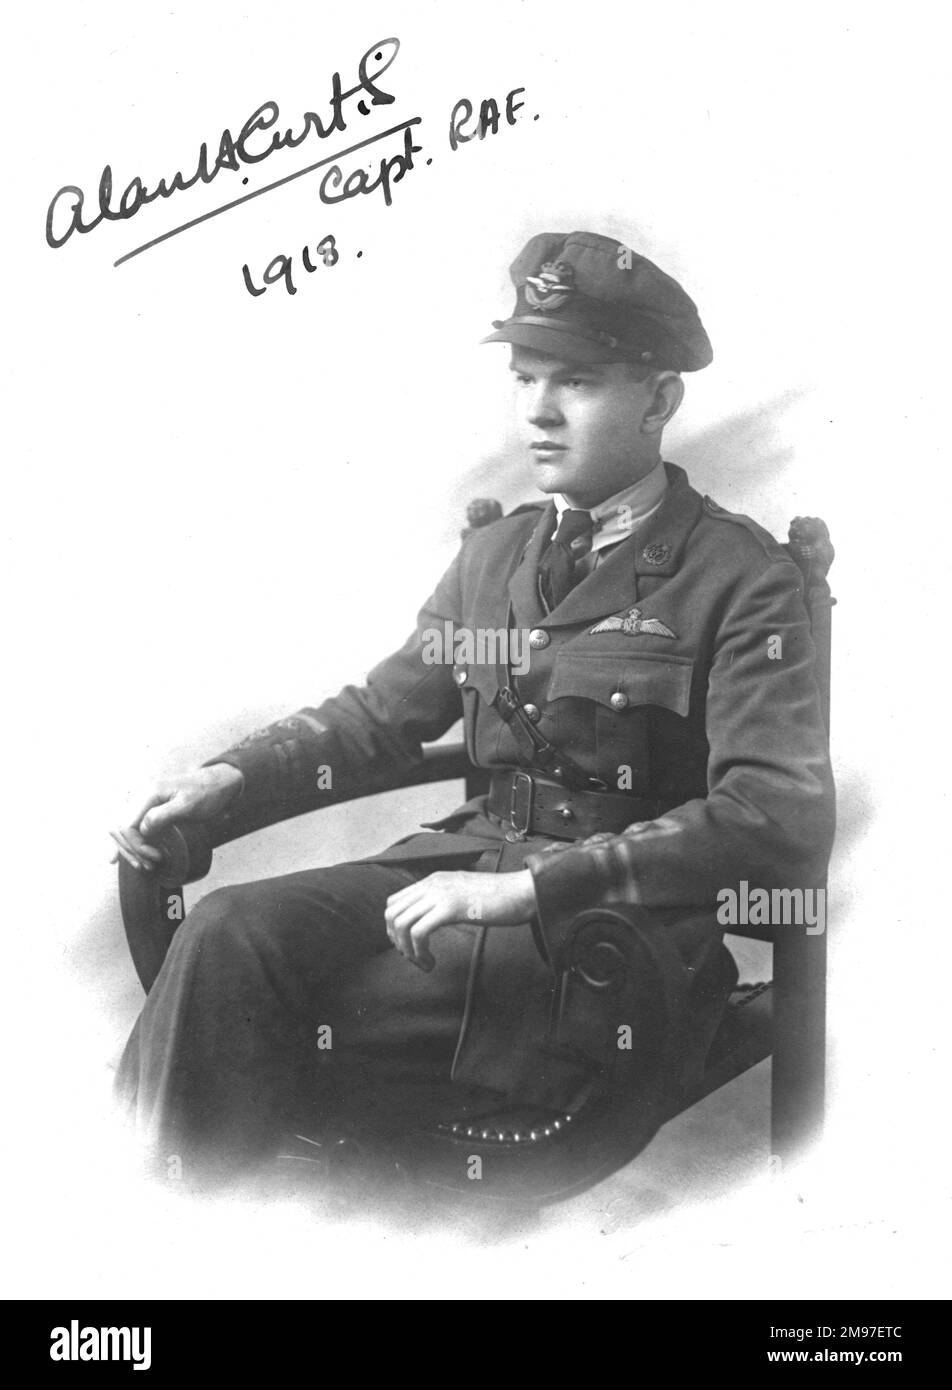 Curtis, Alan H, Capt, RAF pilot, 1918. Stock Photo